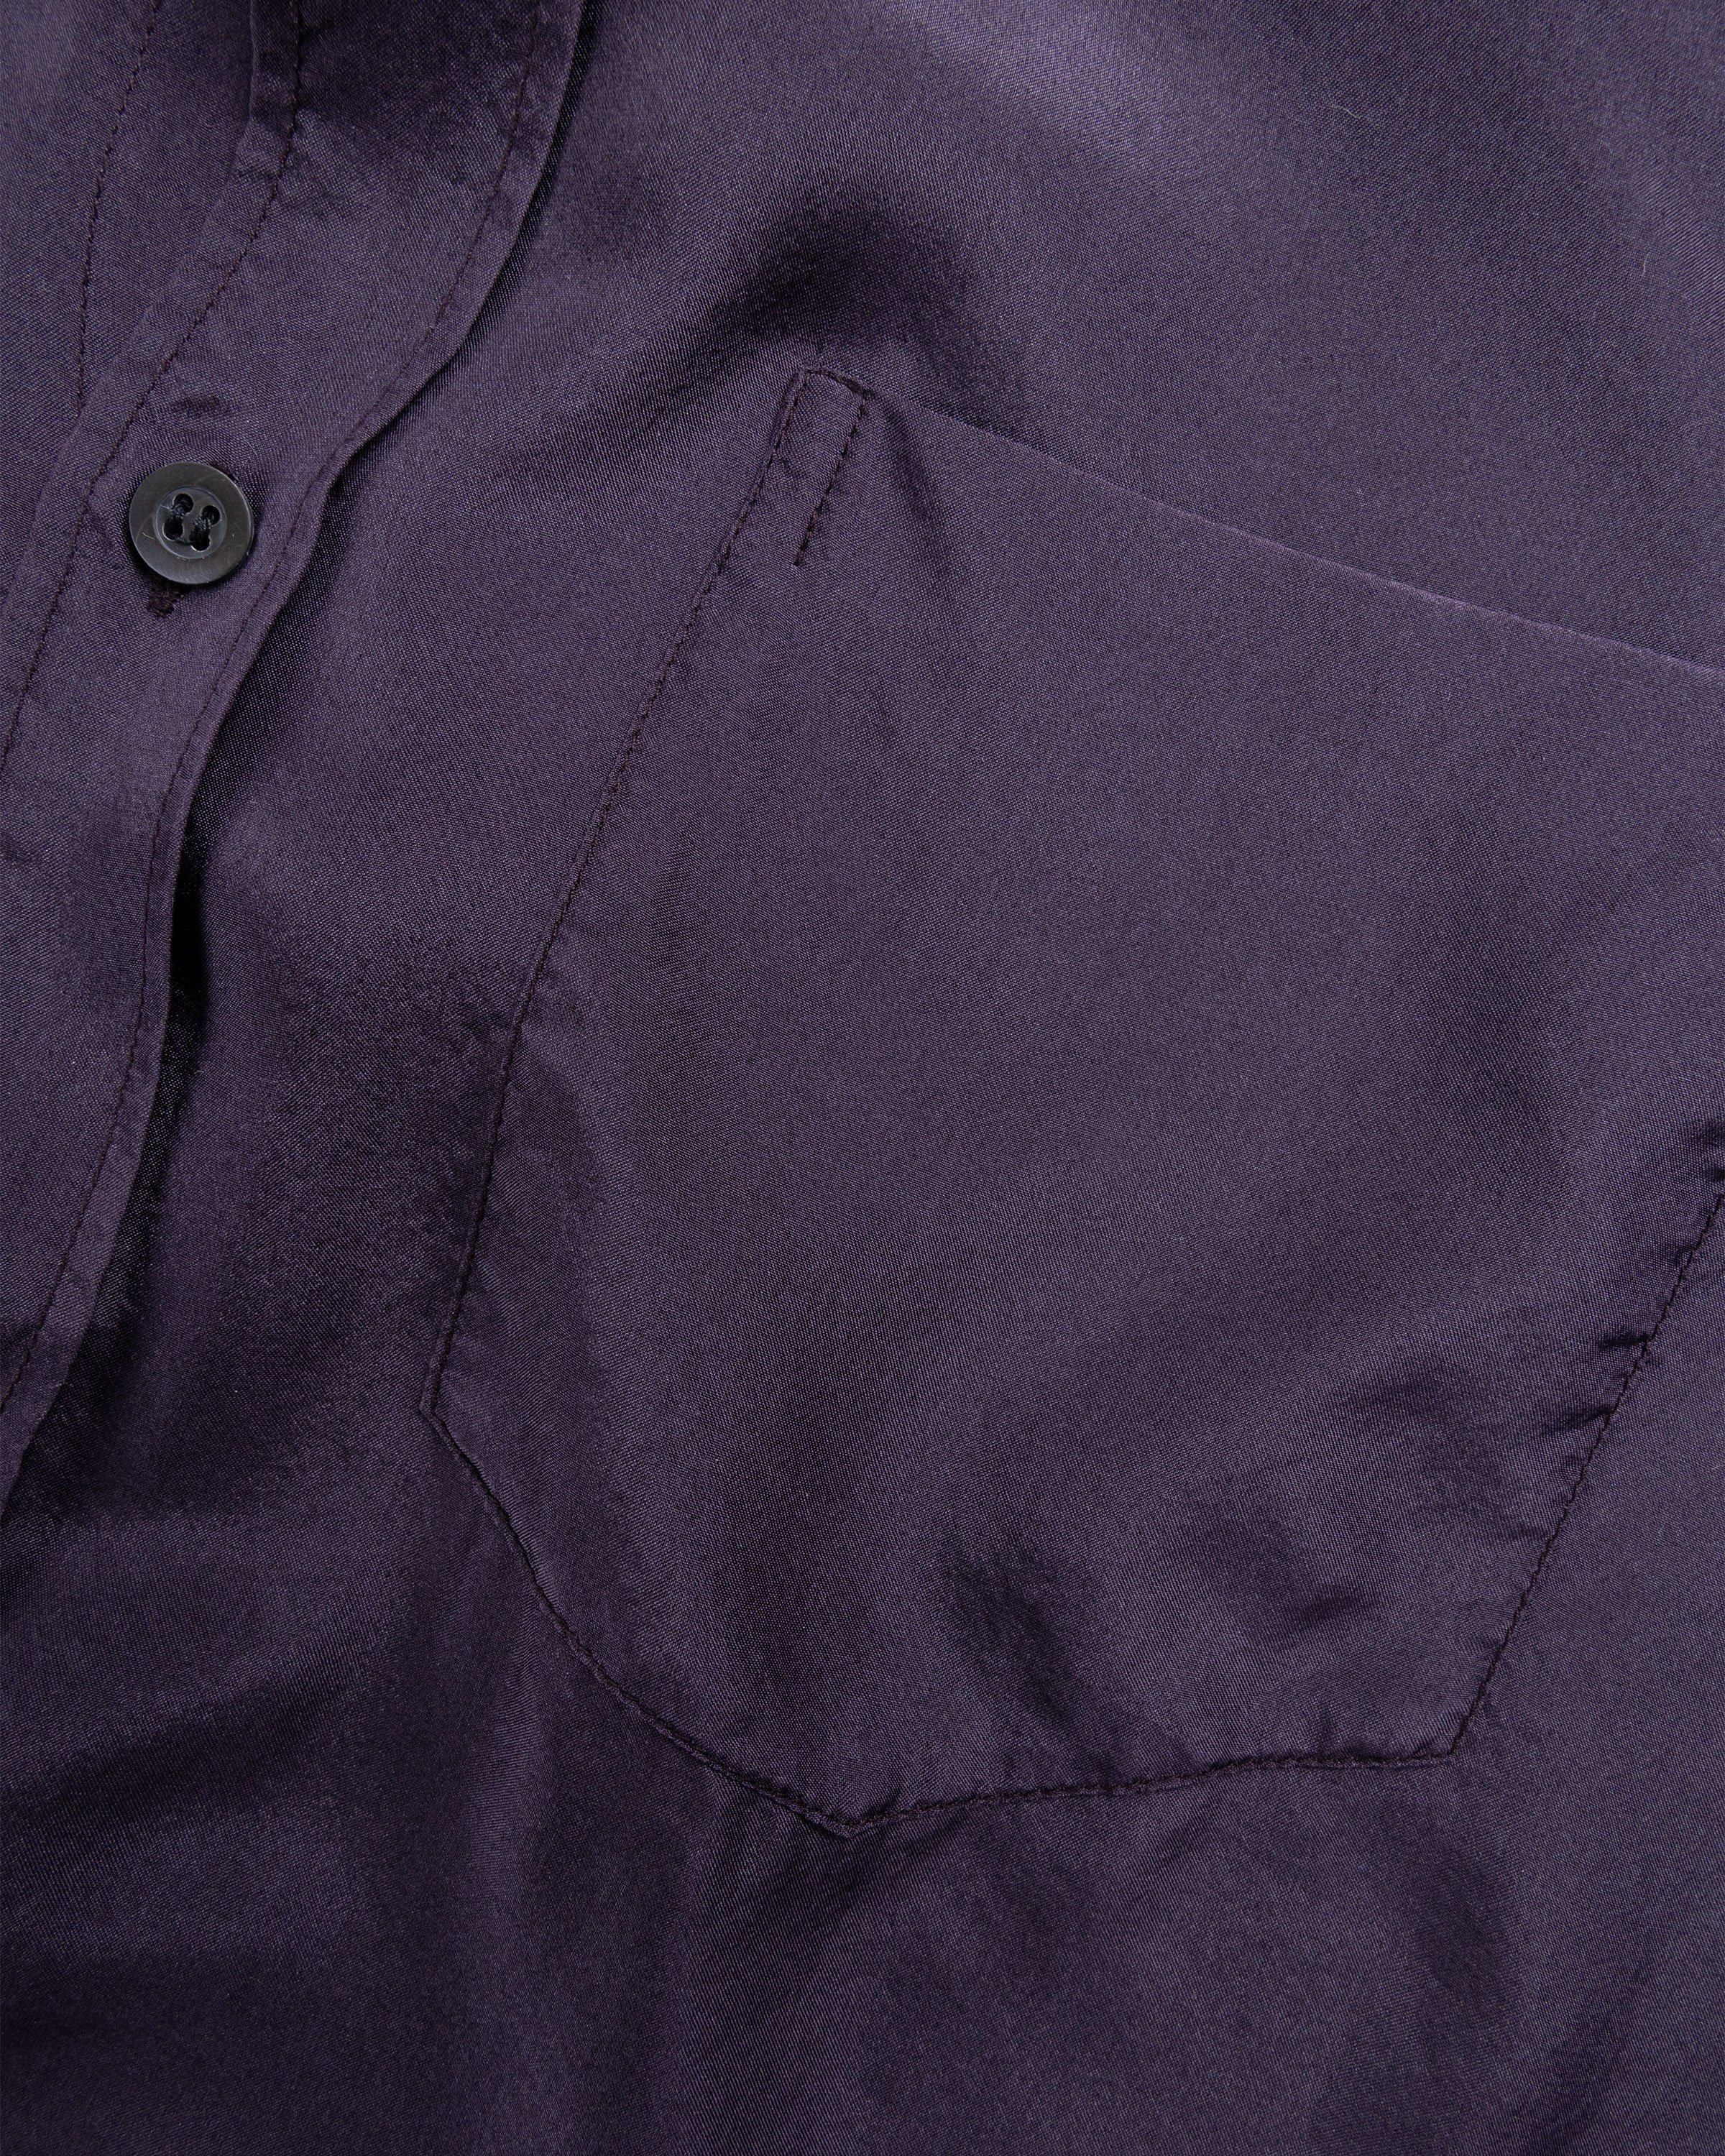 Dries van Noten - CORBINO GD 8159 M.W.SHIRT DPU - Clothing - Purple - Image 7